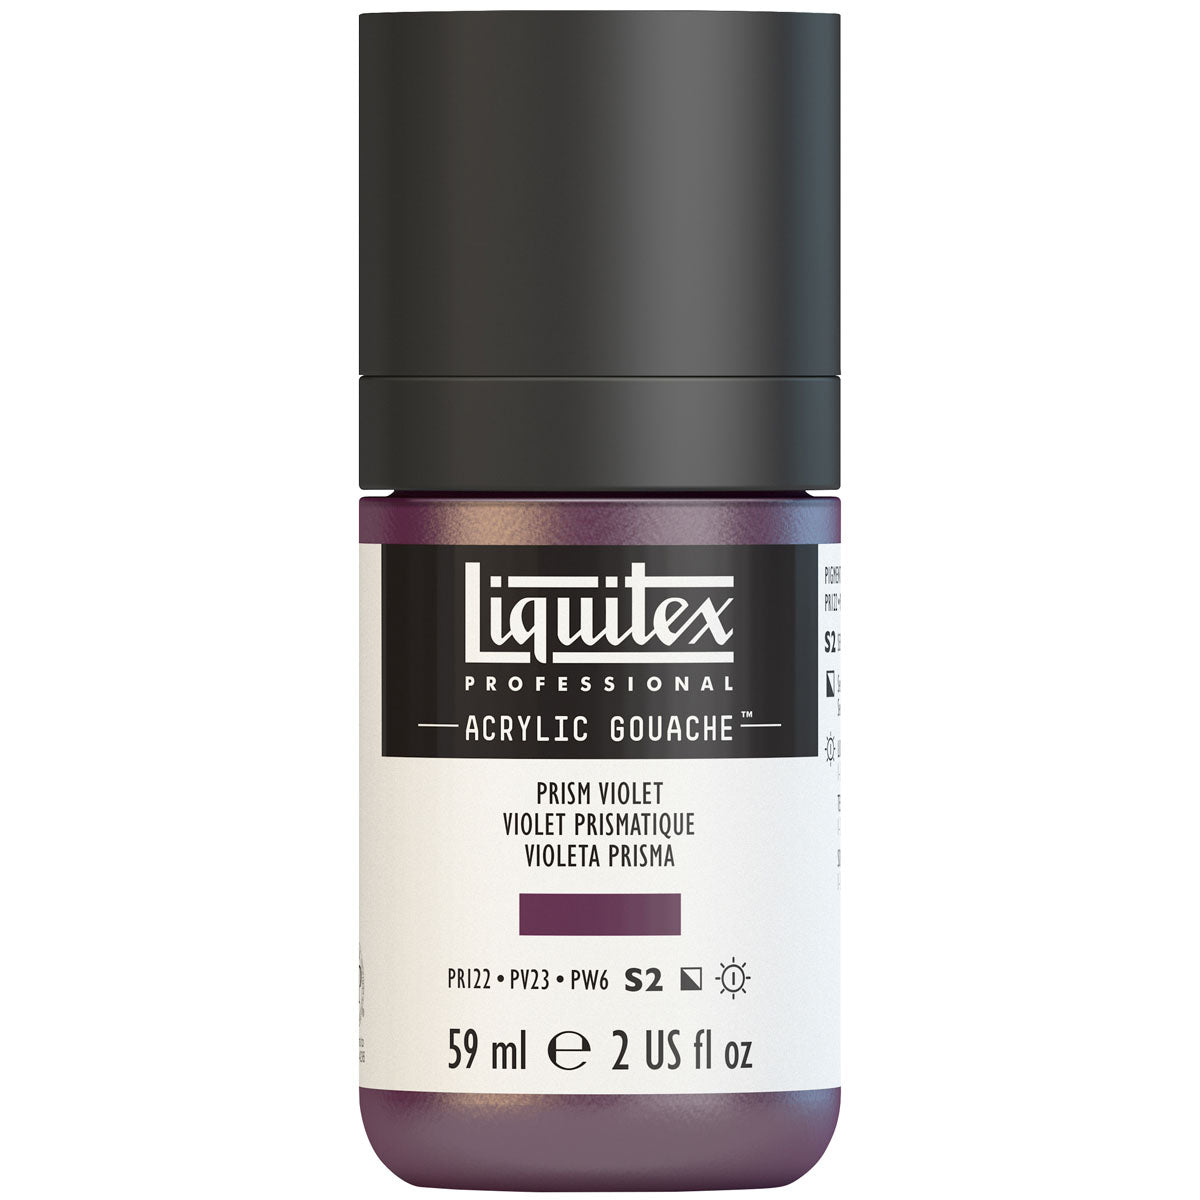 Liquitex - Acrylic Gouache 59ml S2 - Prism Violet